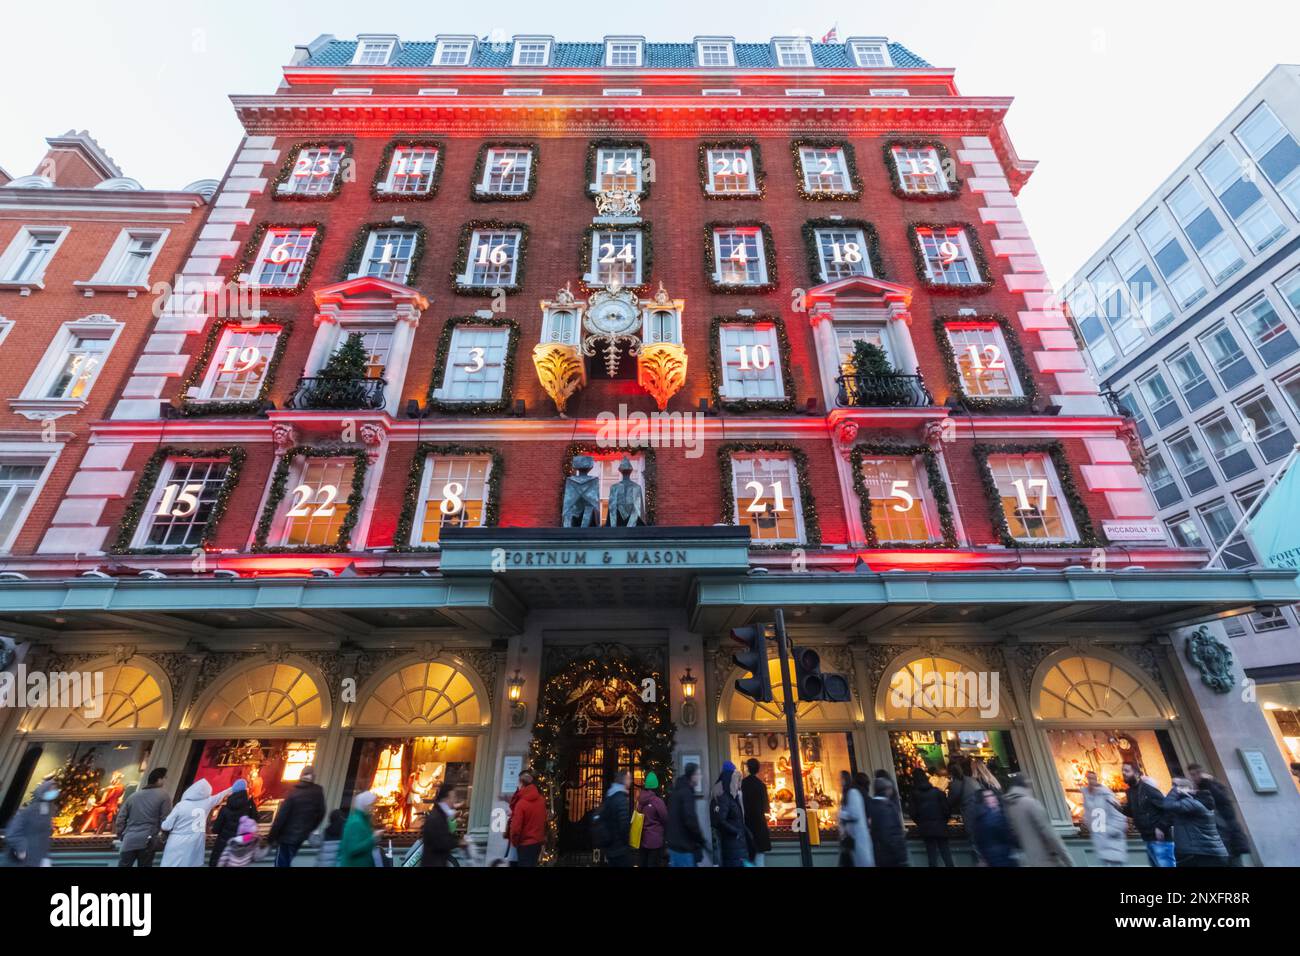 Angleterre, Londres, Piccadilly, vue extérieure Fortnum & Mason Store avec décorations de Noël Banque D'Images